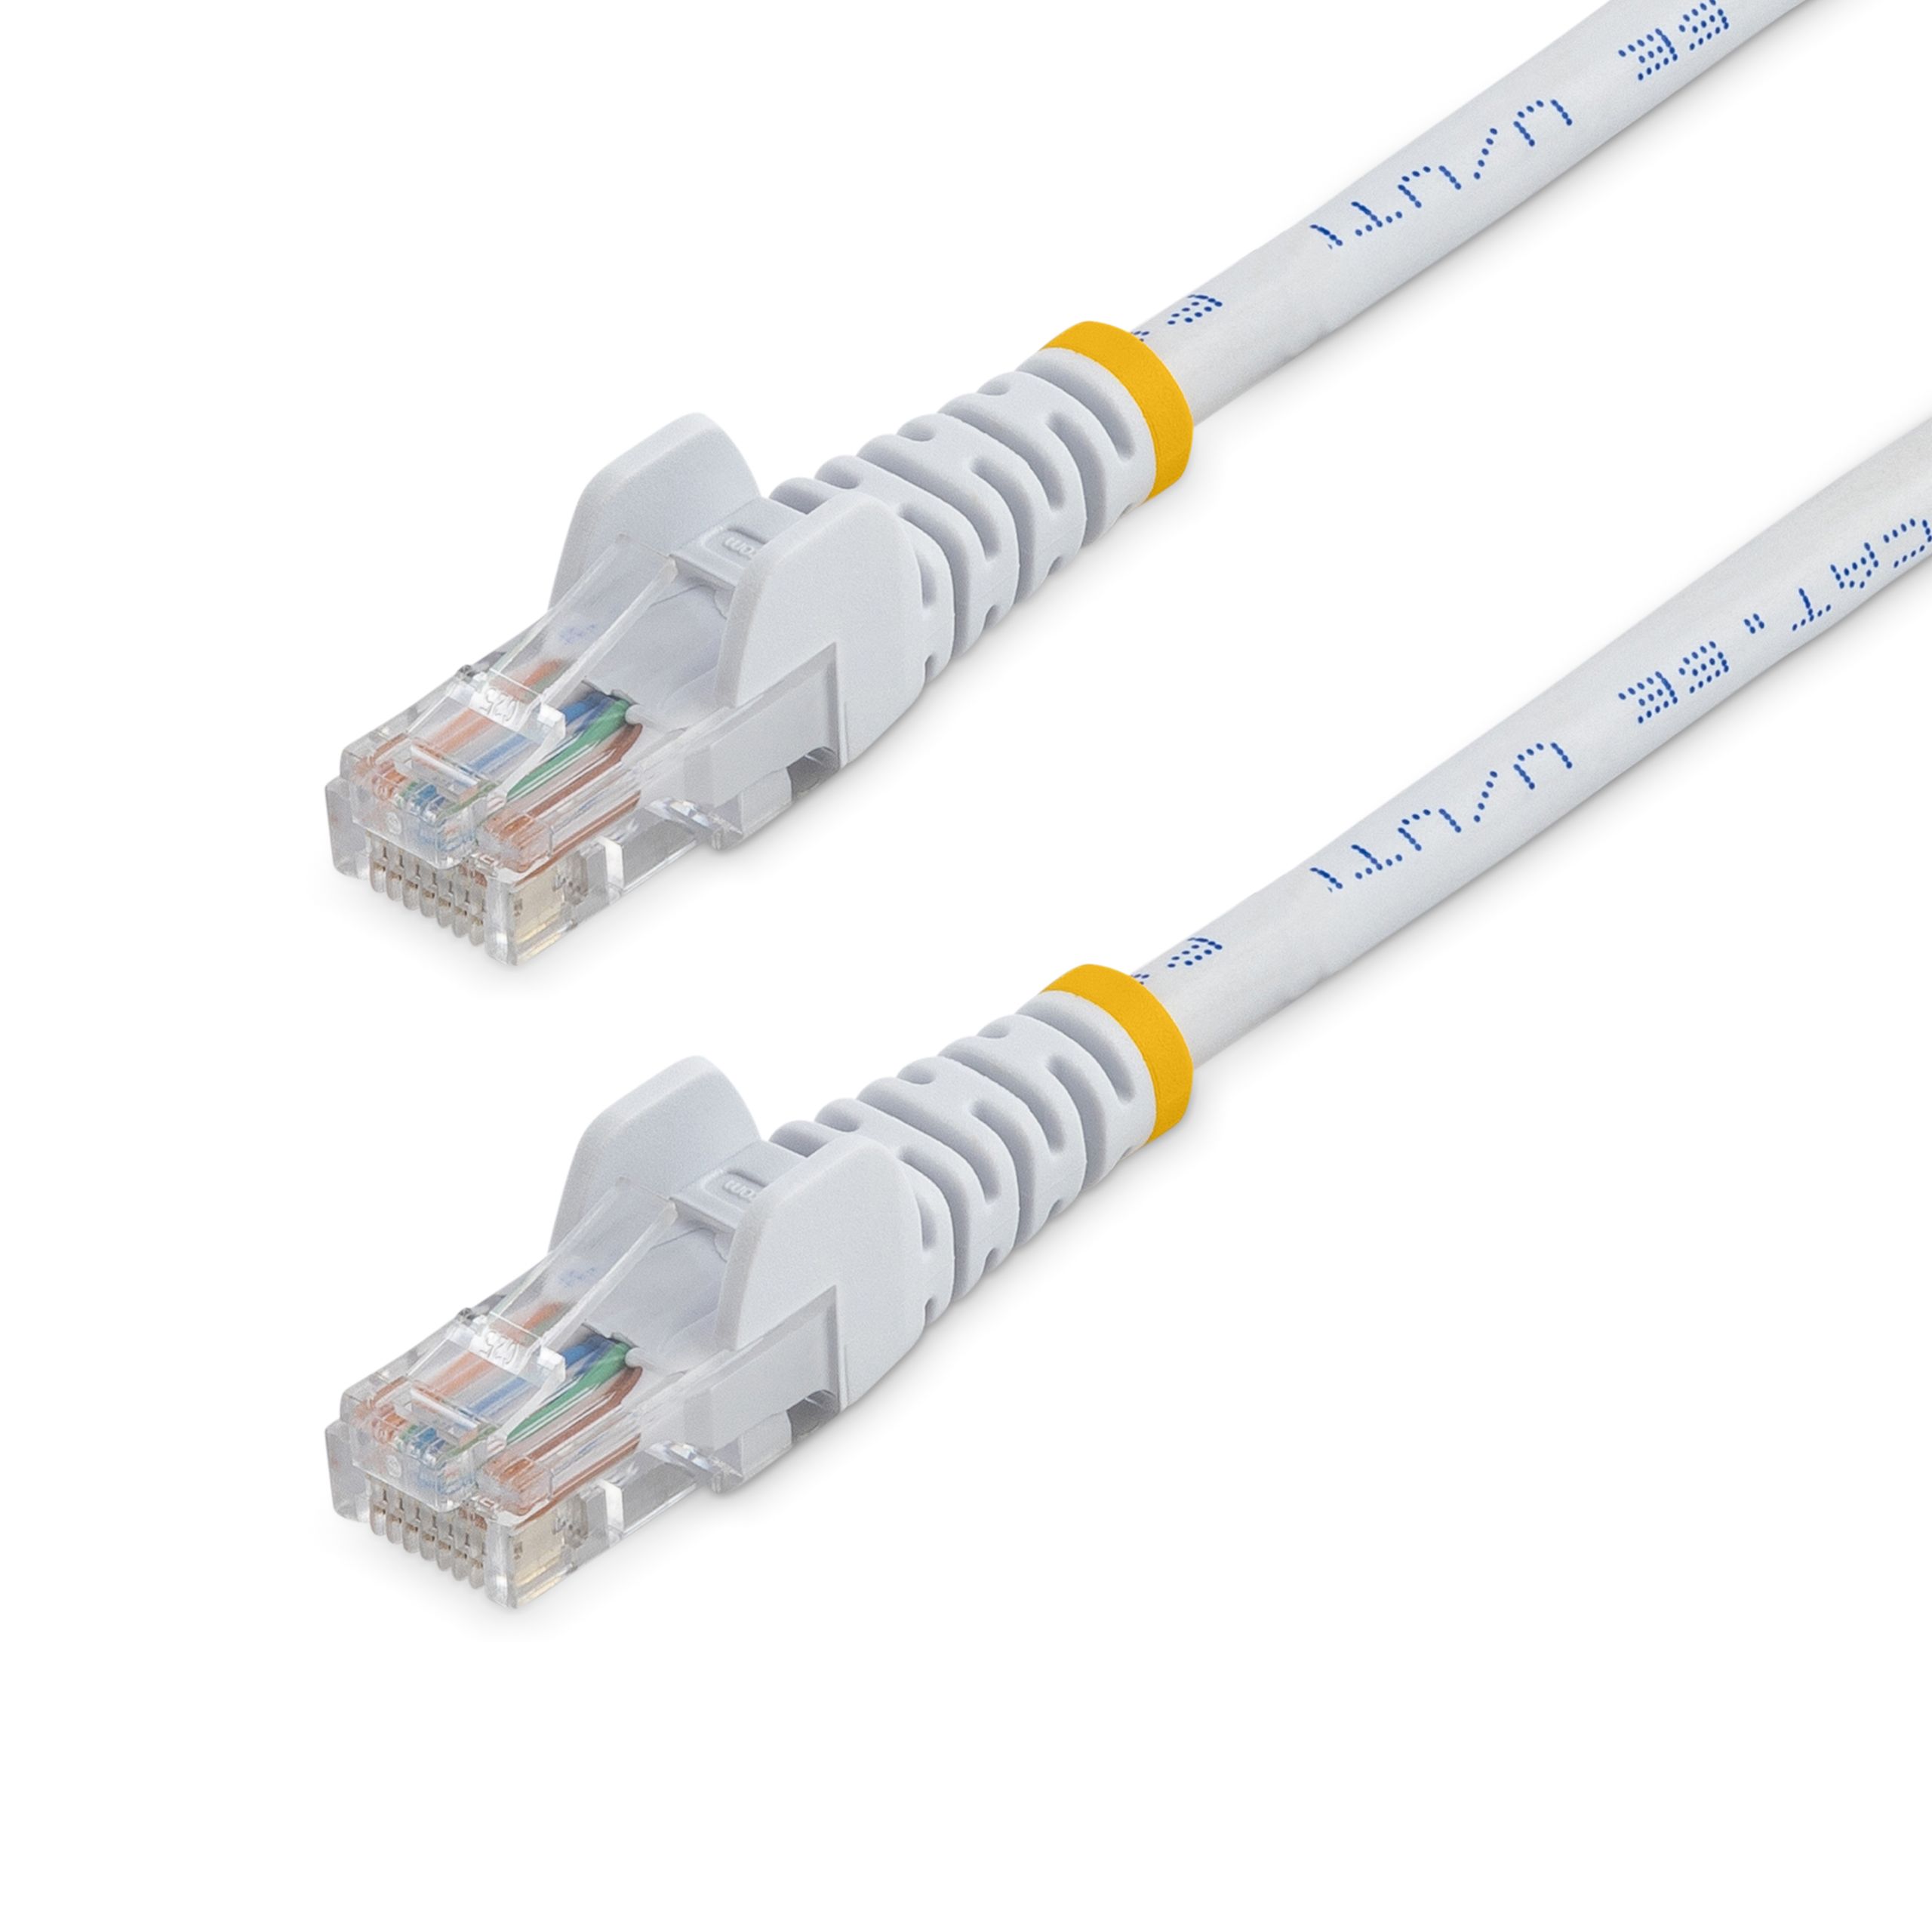 Startech Cat5e Ethernet Cable, RJ45 to RJ45, U/UTP Shield, White PVC Sheath, 5m